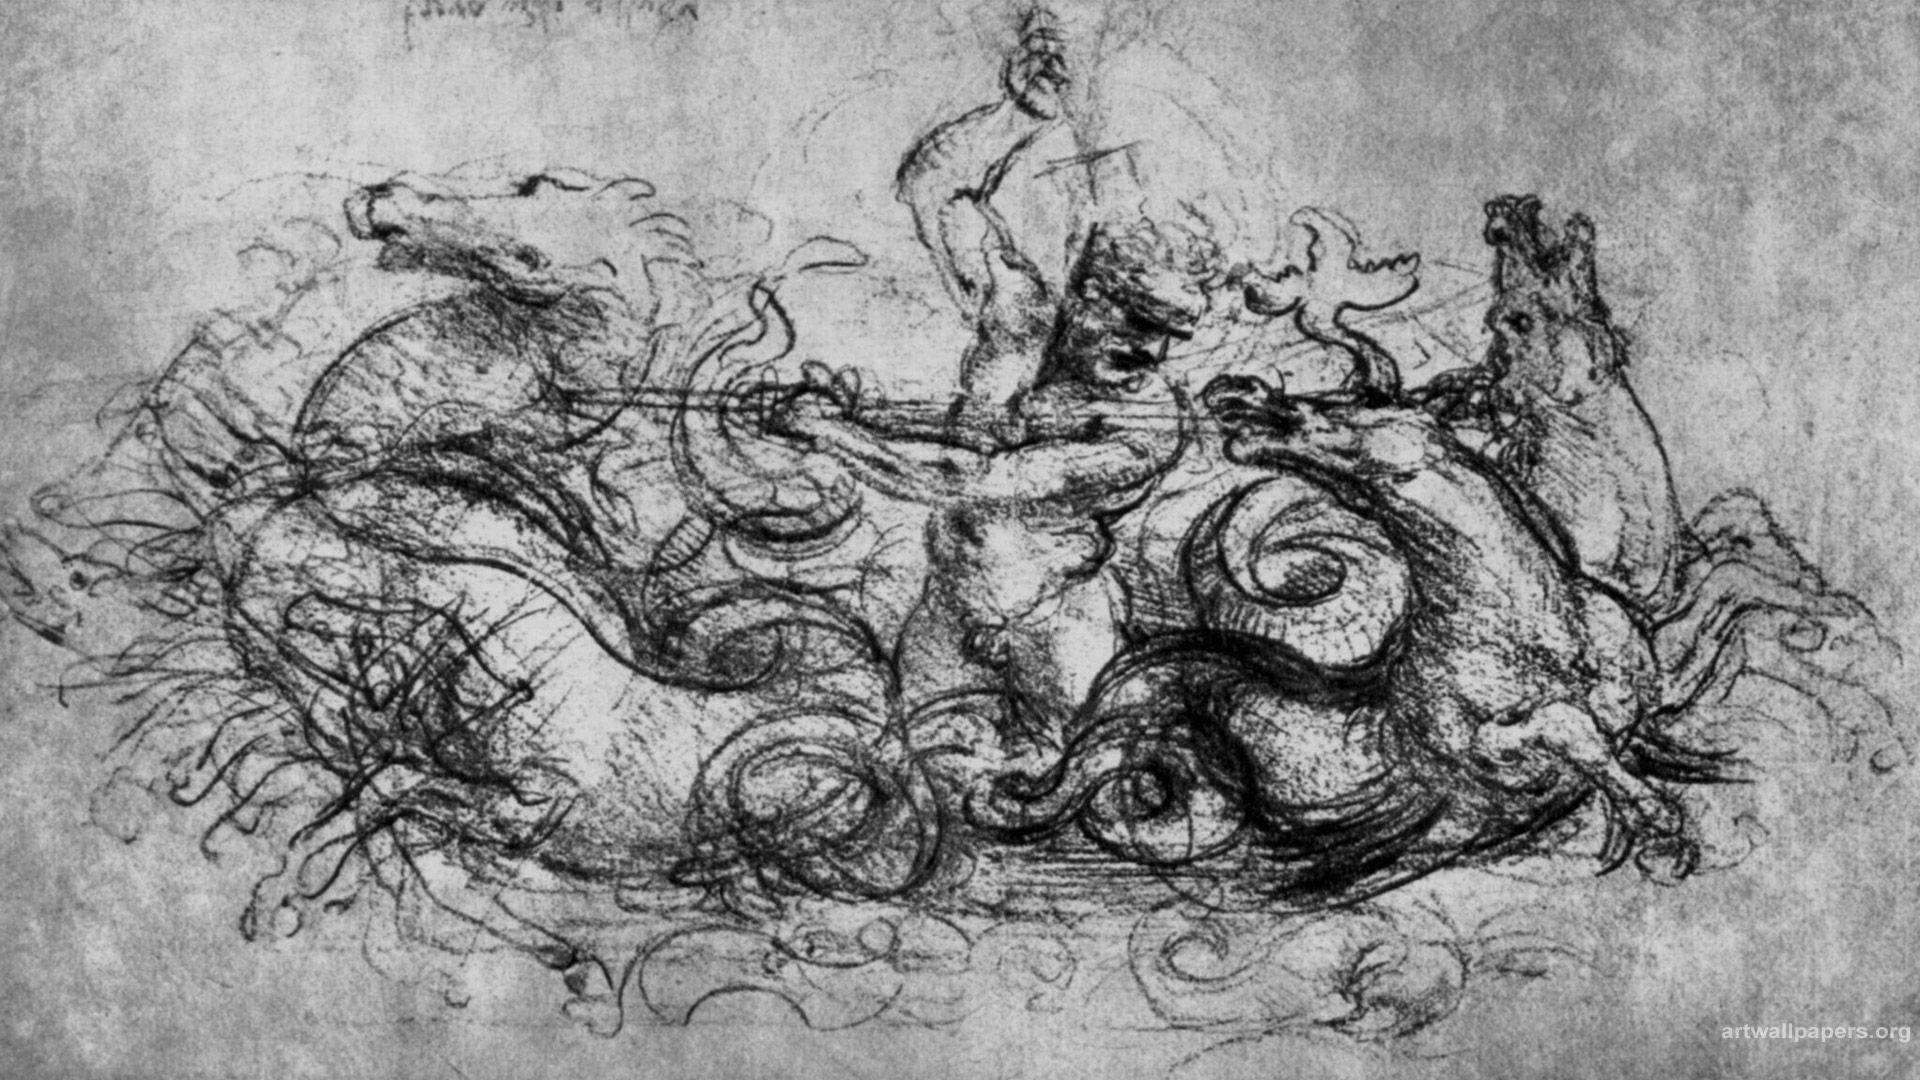 طراحی سیاه و سفید مردی سوار بر اسب اثر نقاش و هنرمند بزرگ لئوناردو داوینچی